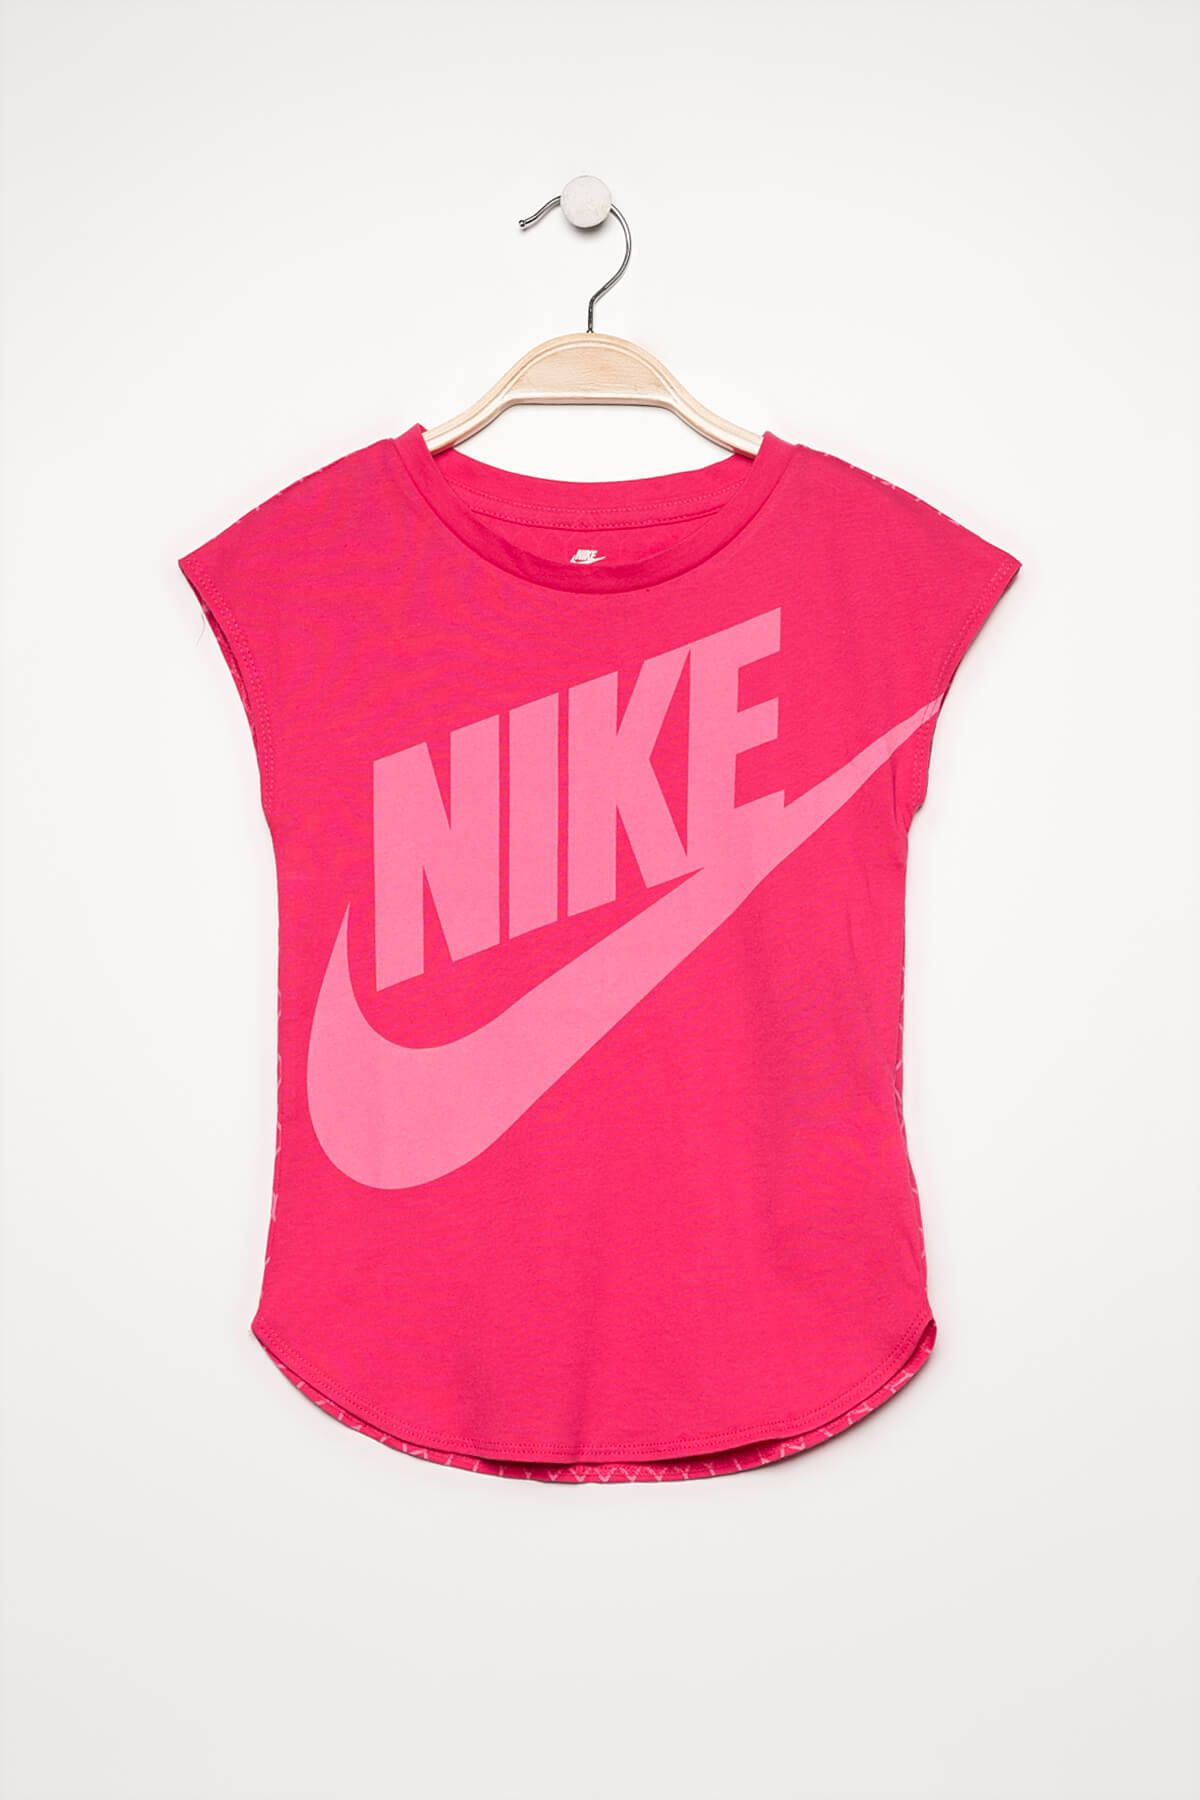 Nike Pembe Kız Çocuk T-shirt 36B961